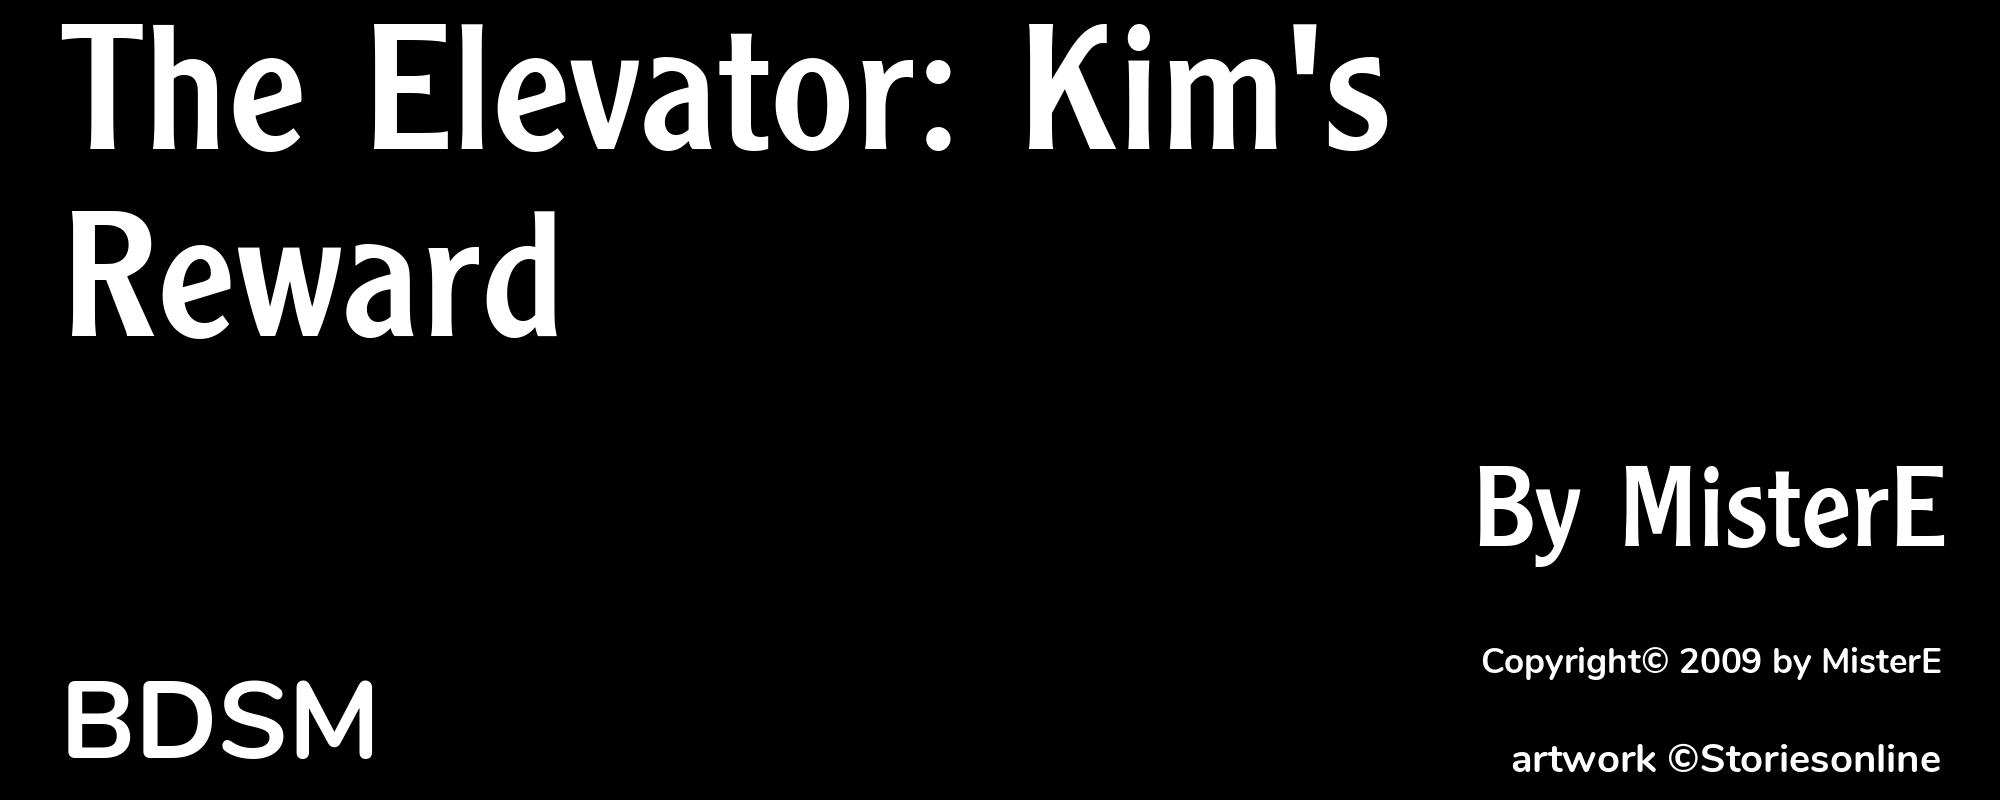 The Elevator: Kim's Reward - Cover